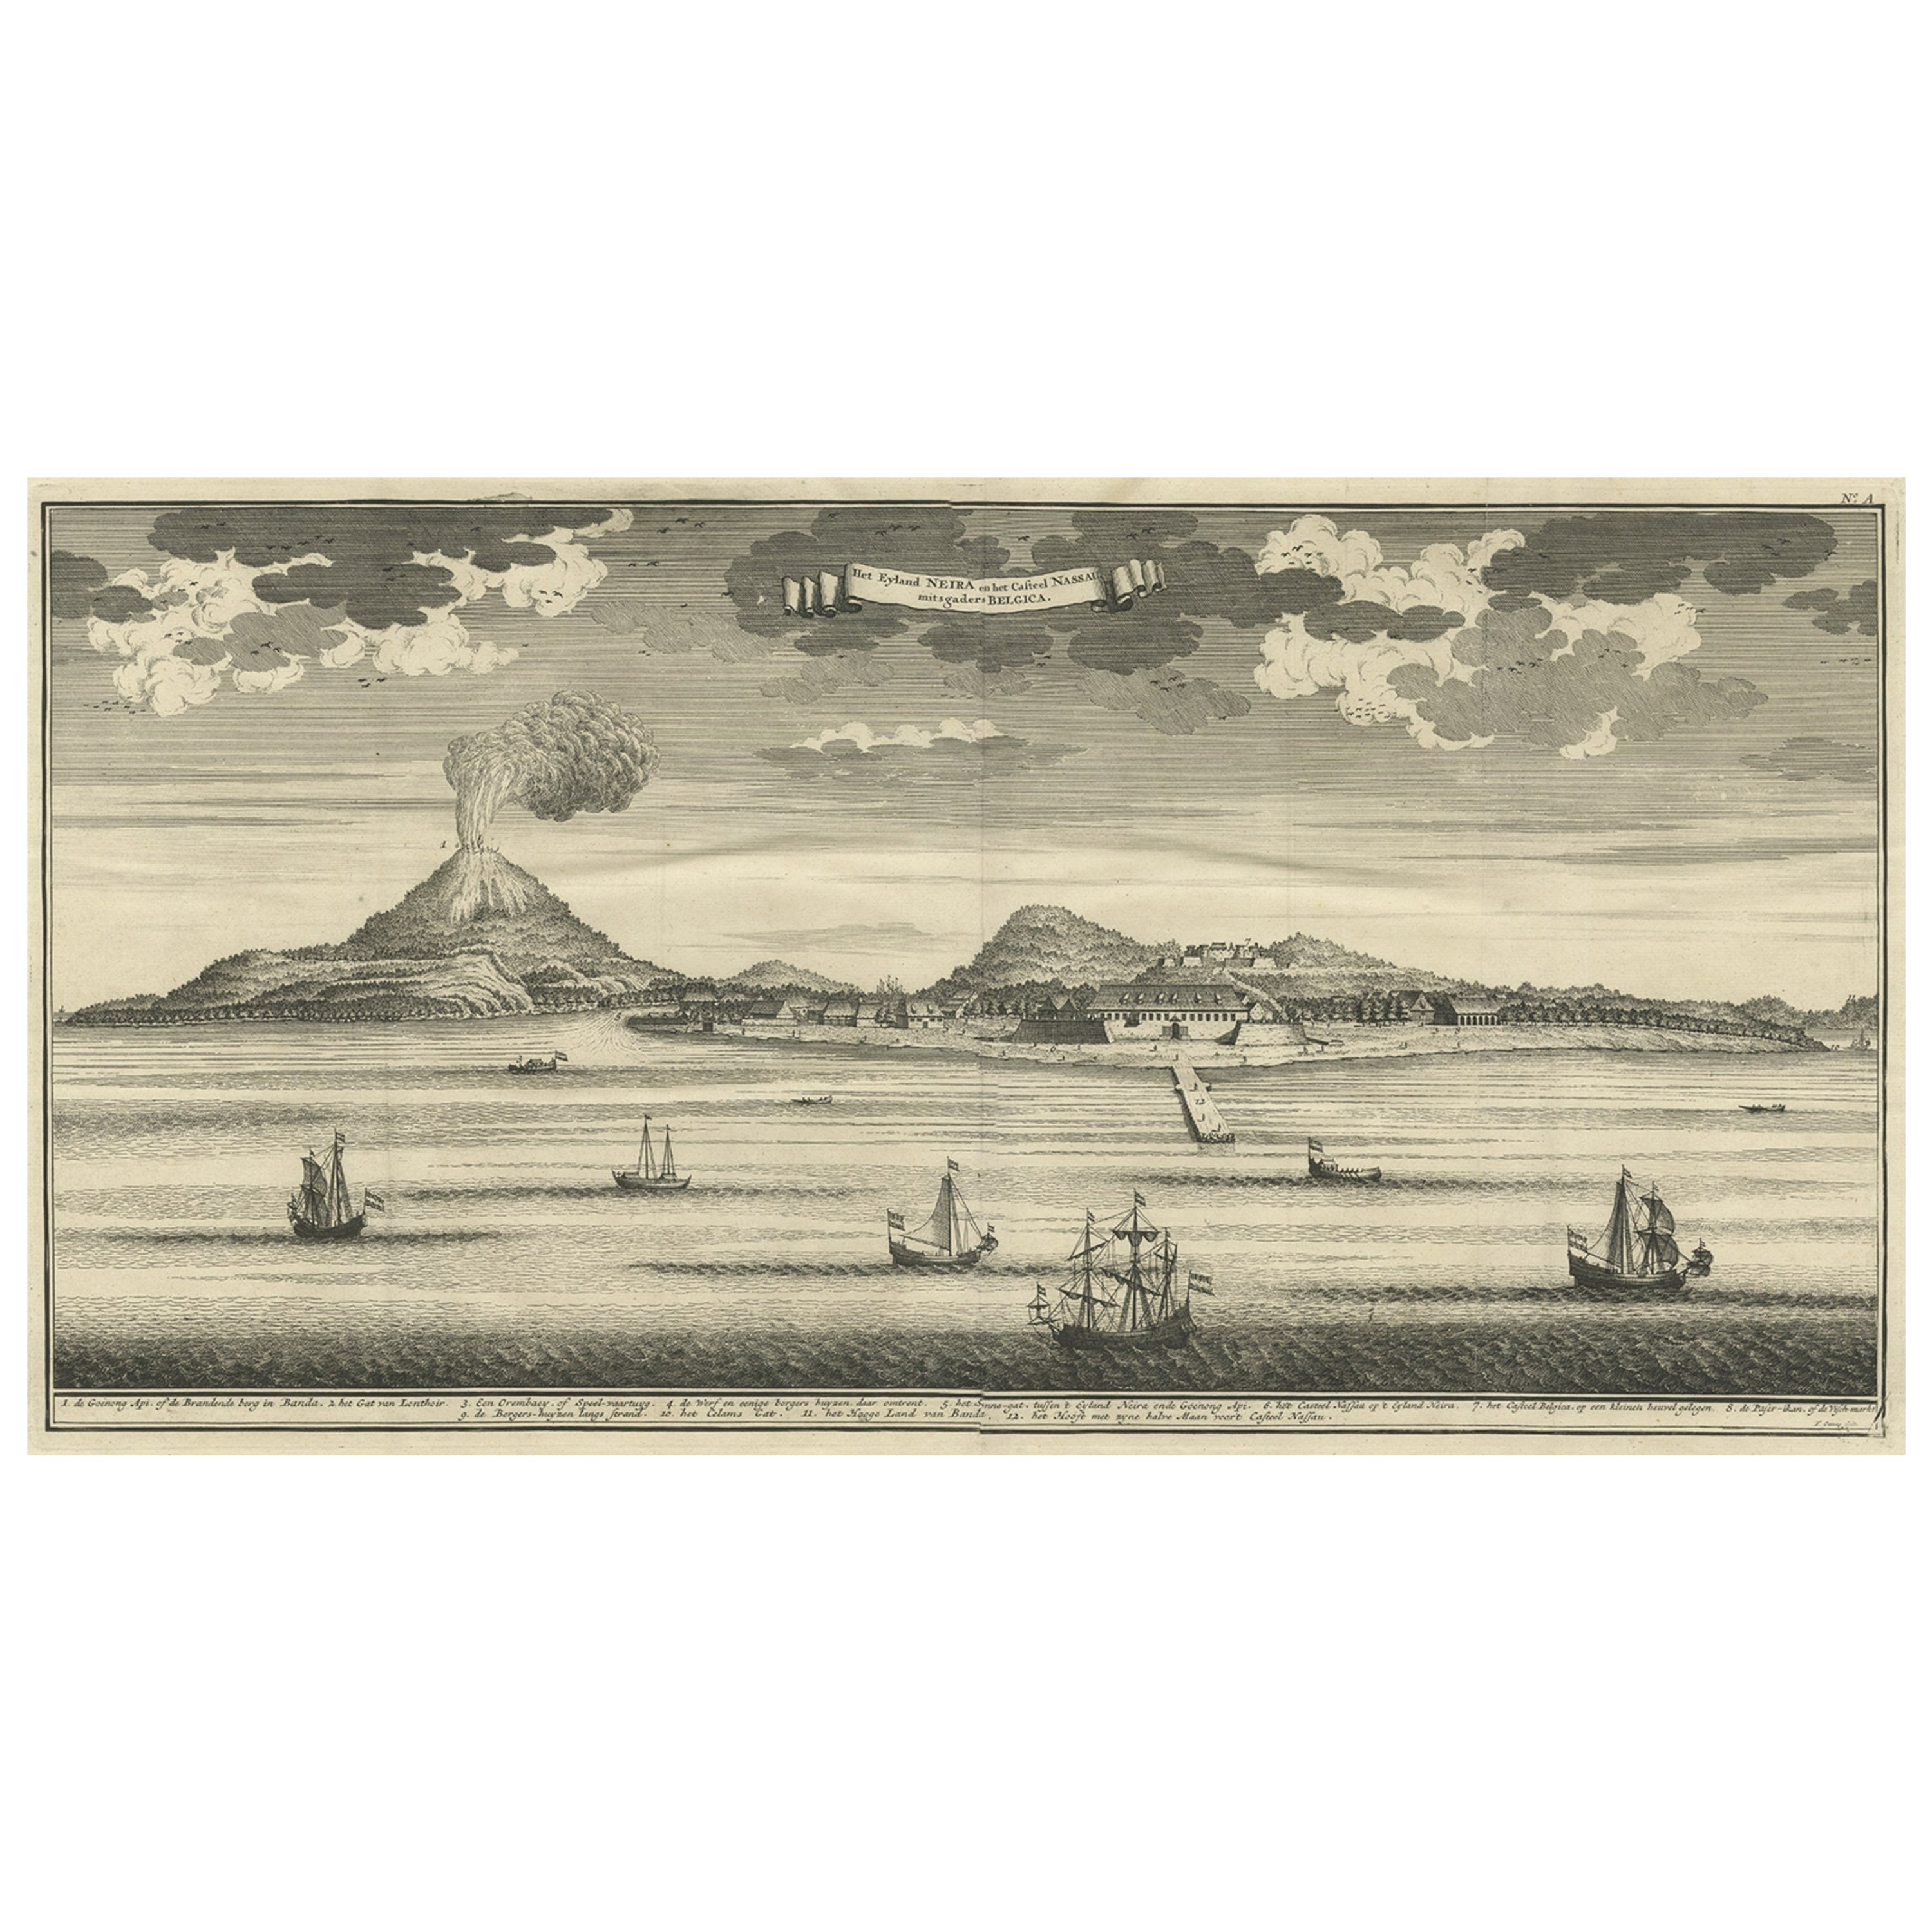 Schöne alte Ansicht der Spice Island Banda Neira mit Fort Nassau, Indonesien, 1726